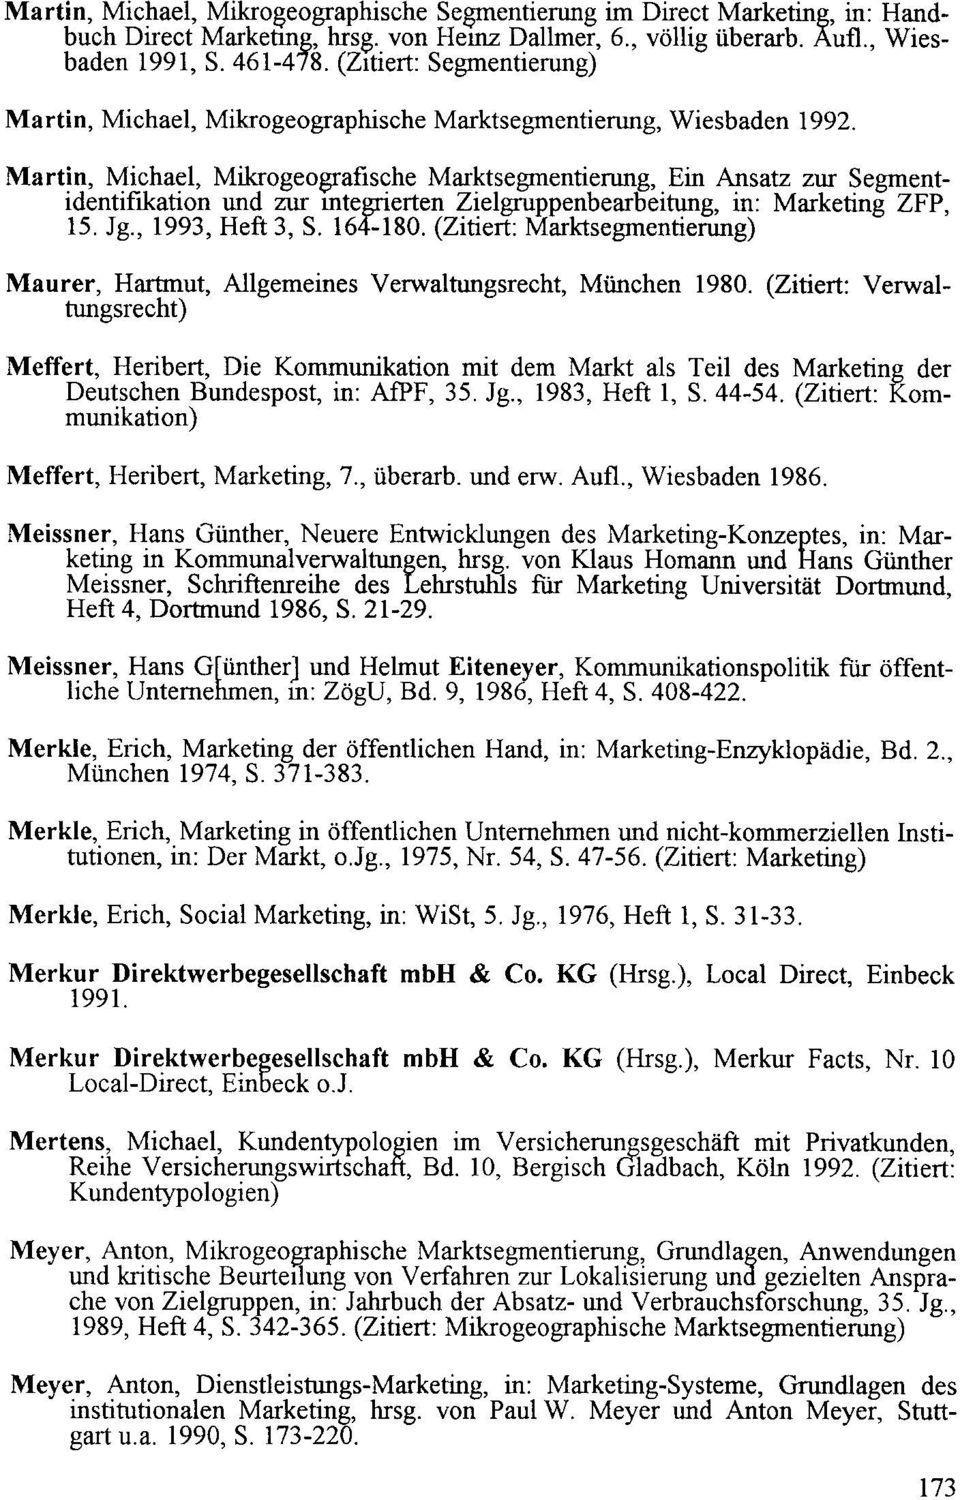 Martin, Michael, Mikrogeografische Marktsegmentierung, Ein Ansatz zur Segmentidentifikation und zur mtegrierten Zielgruppenbearbeitung, in: Marketing ZFP, 15. Jg., 1993, Heft 3, S. 164-180.